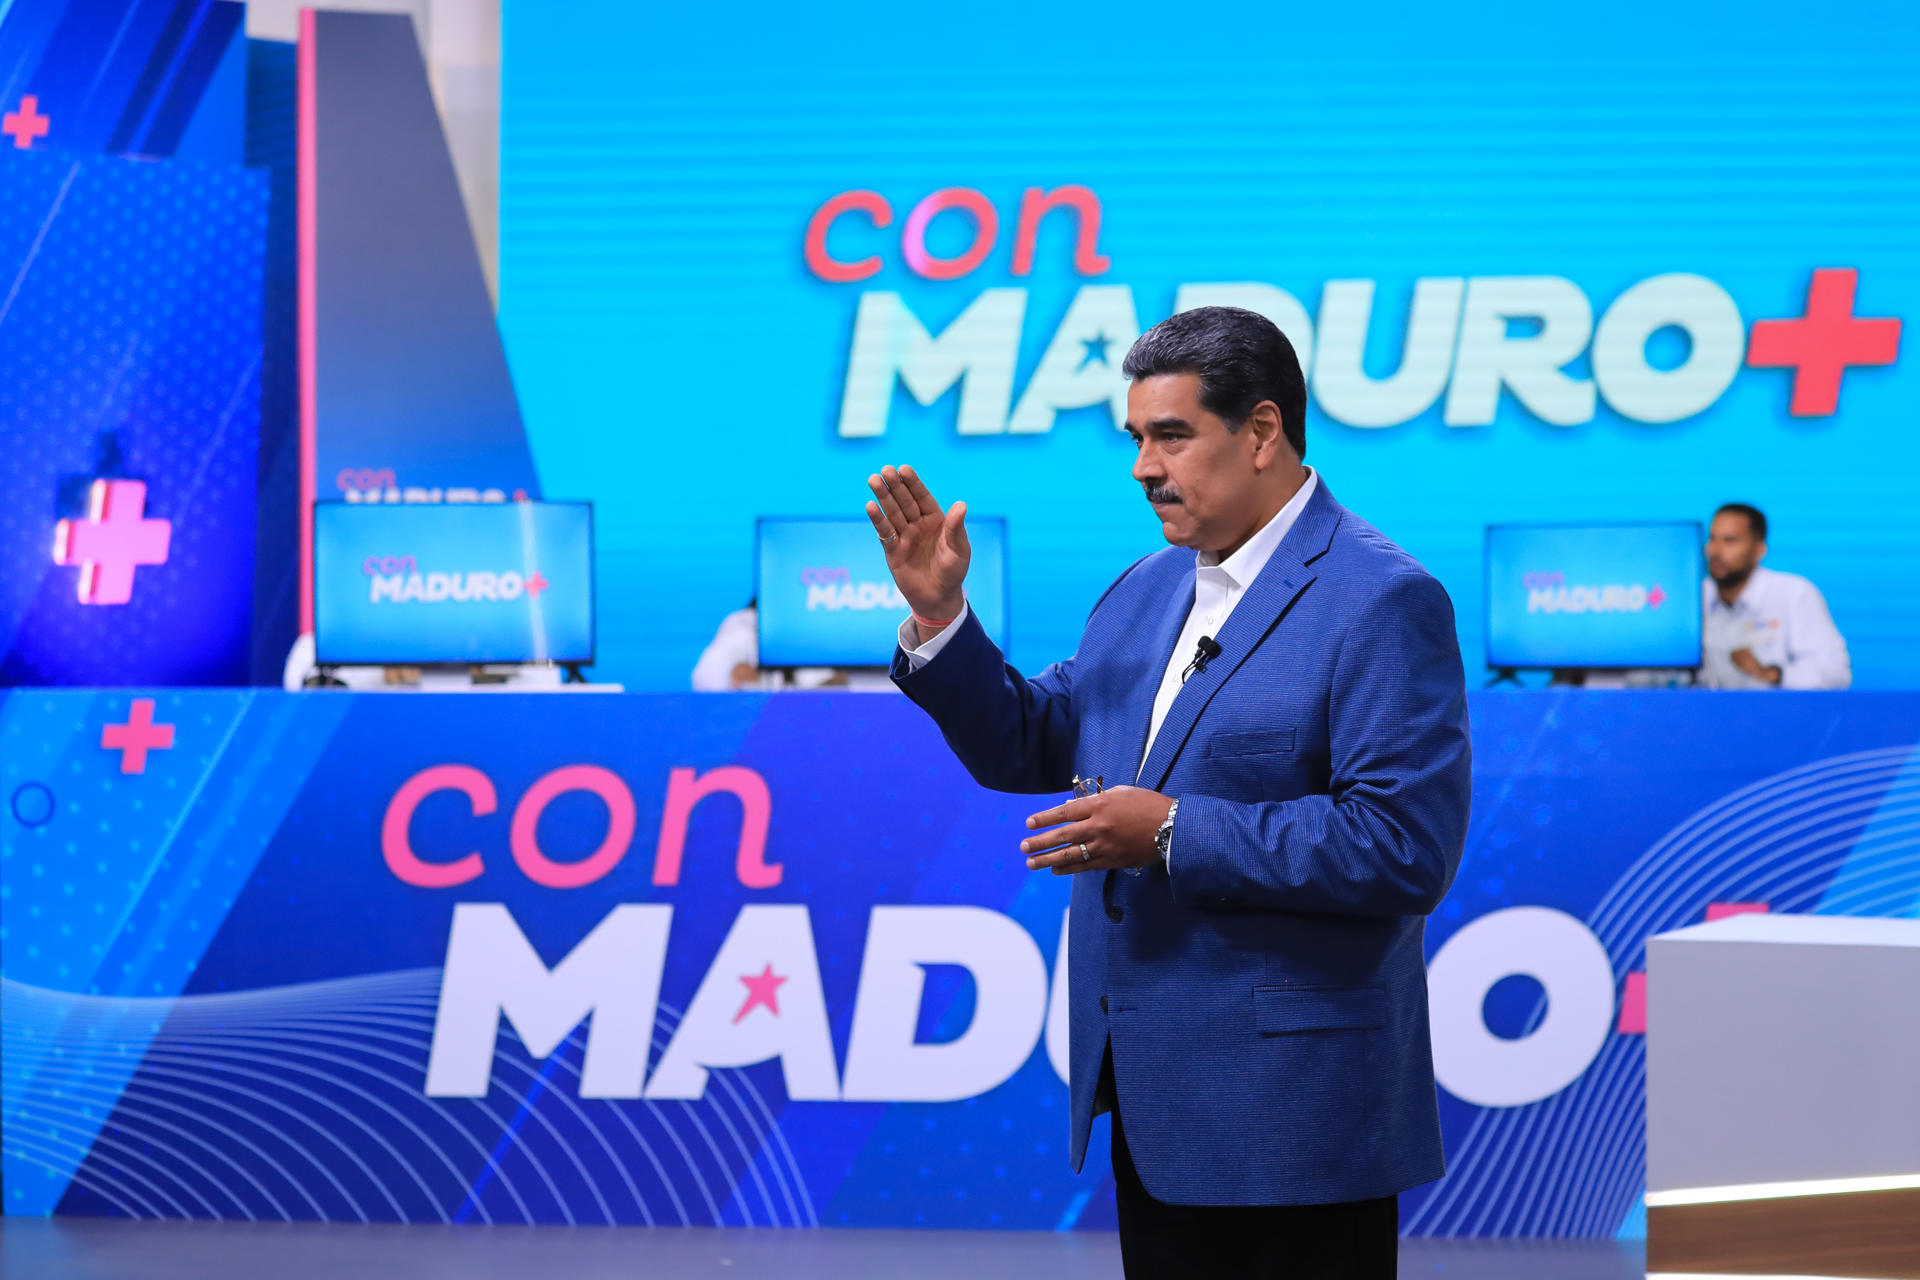 Maduro apela al cinismo y presume de “inversión social” mientras tiene a los venezolanos “pelando”